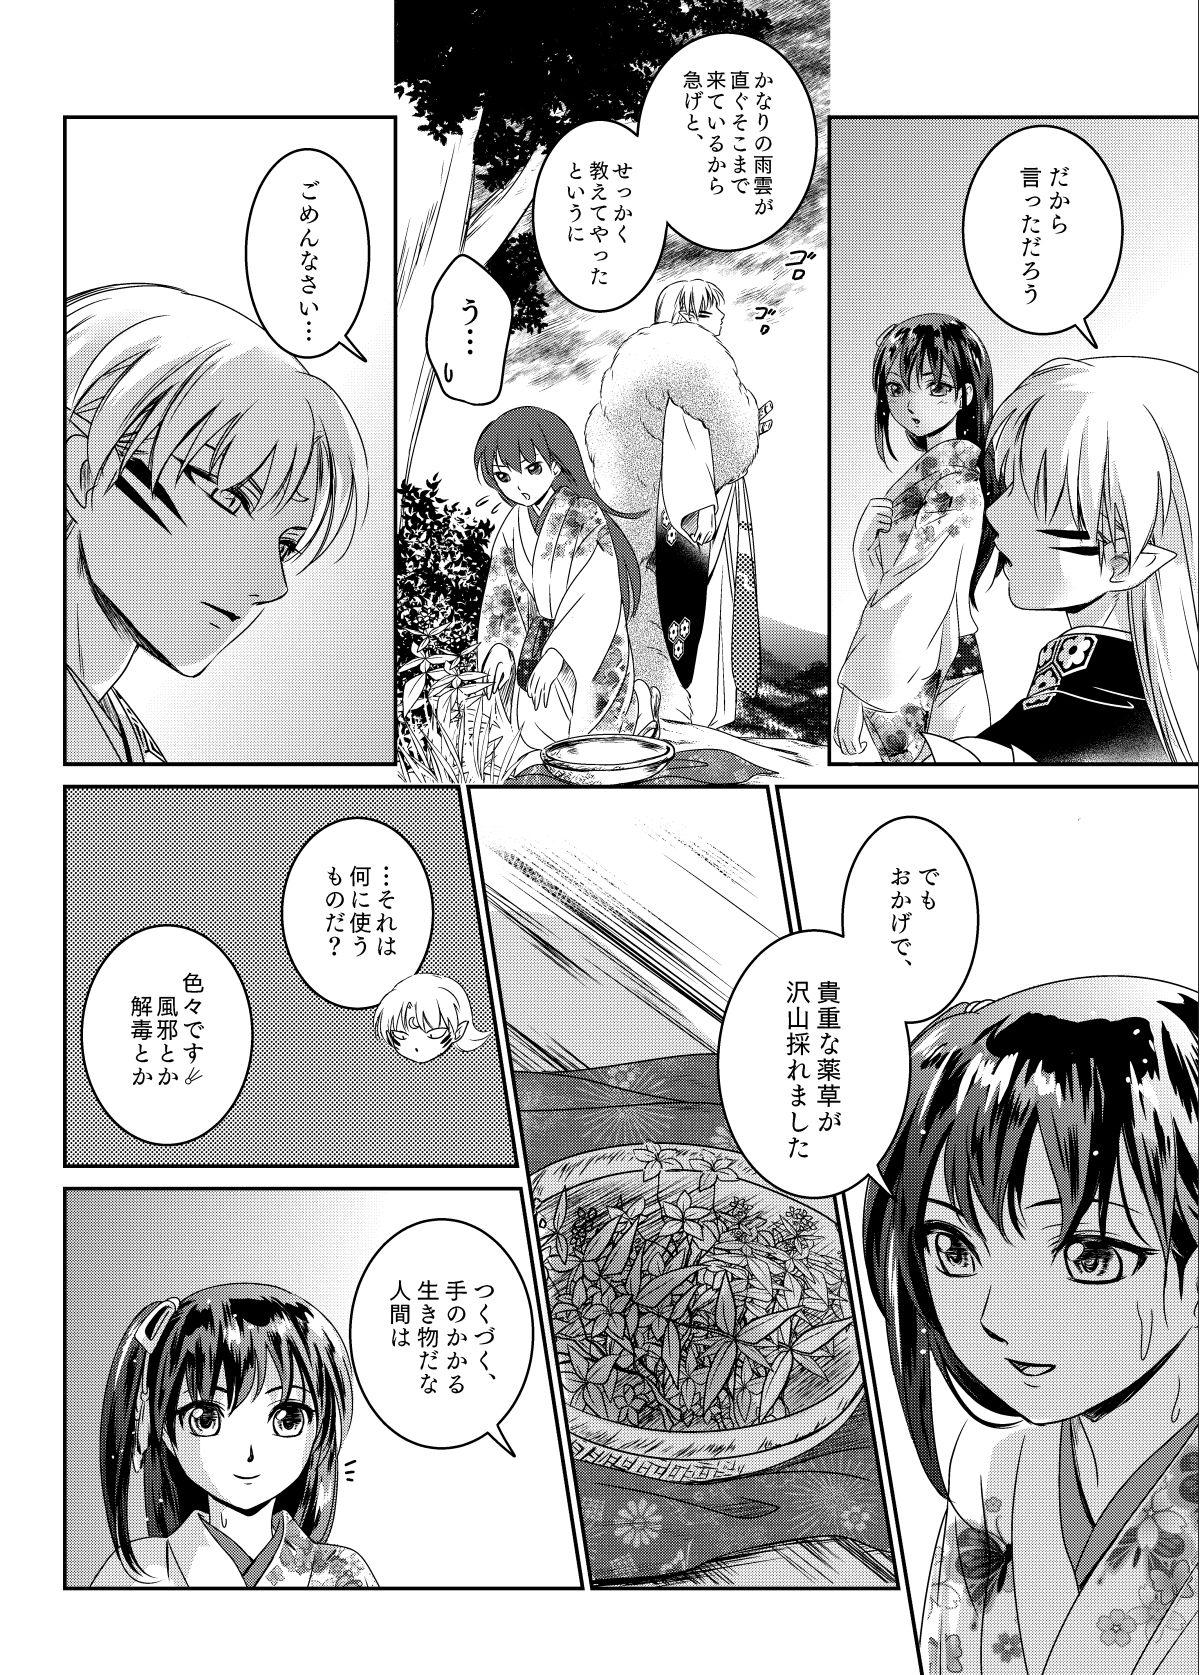 Casada Ame no Hi wa Yukkuri Amayadori - Inuyasha Leather - Page 3